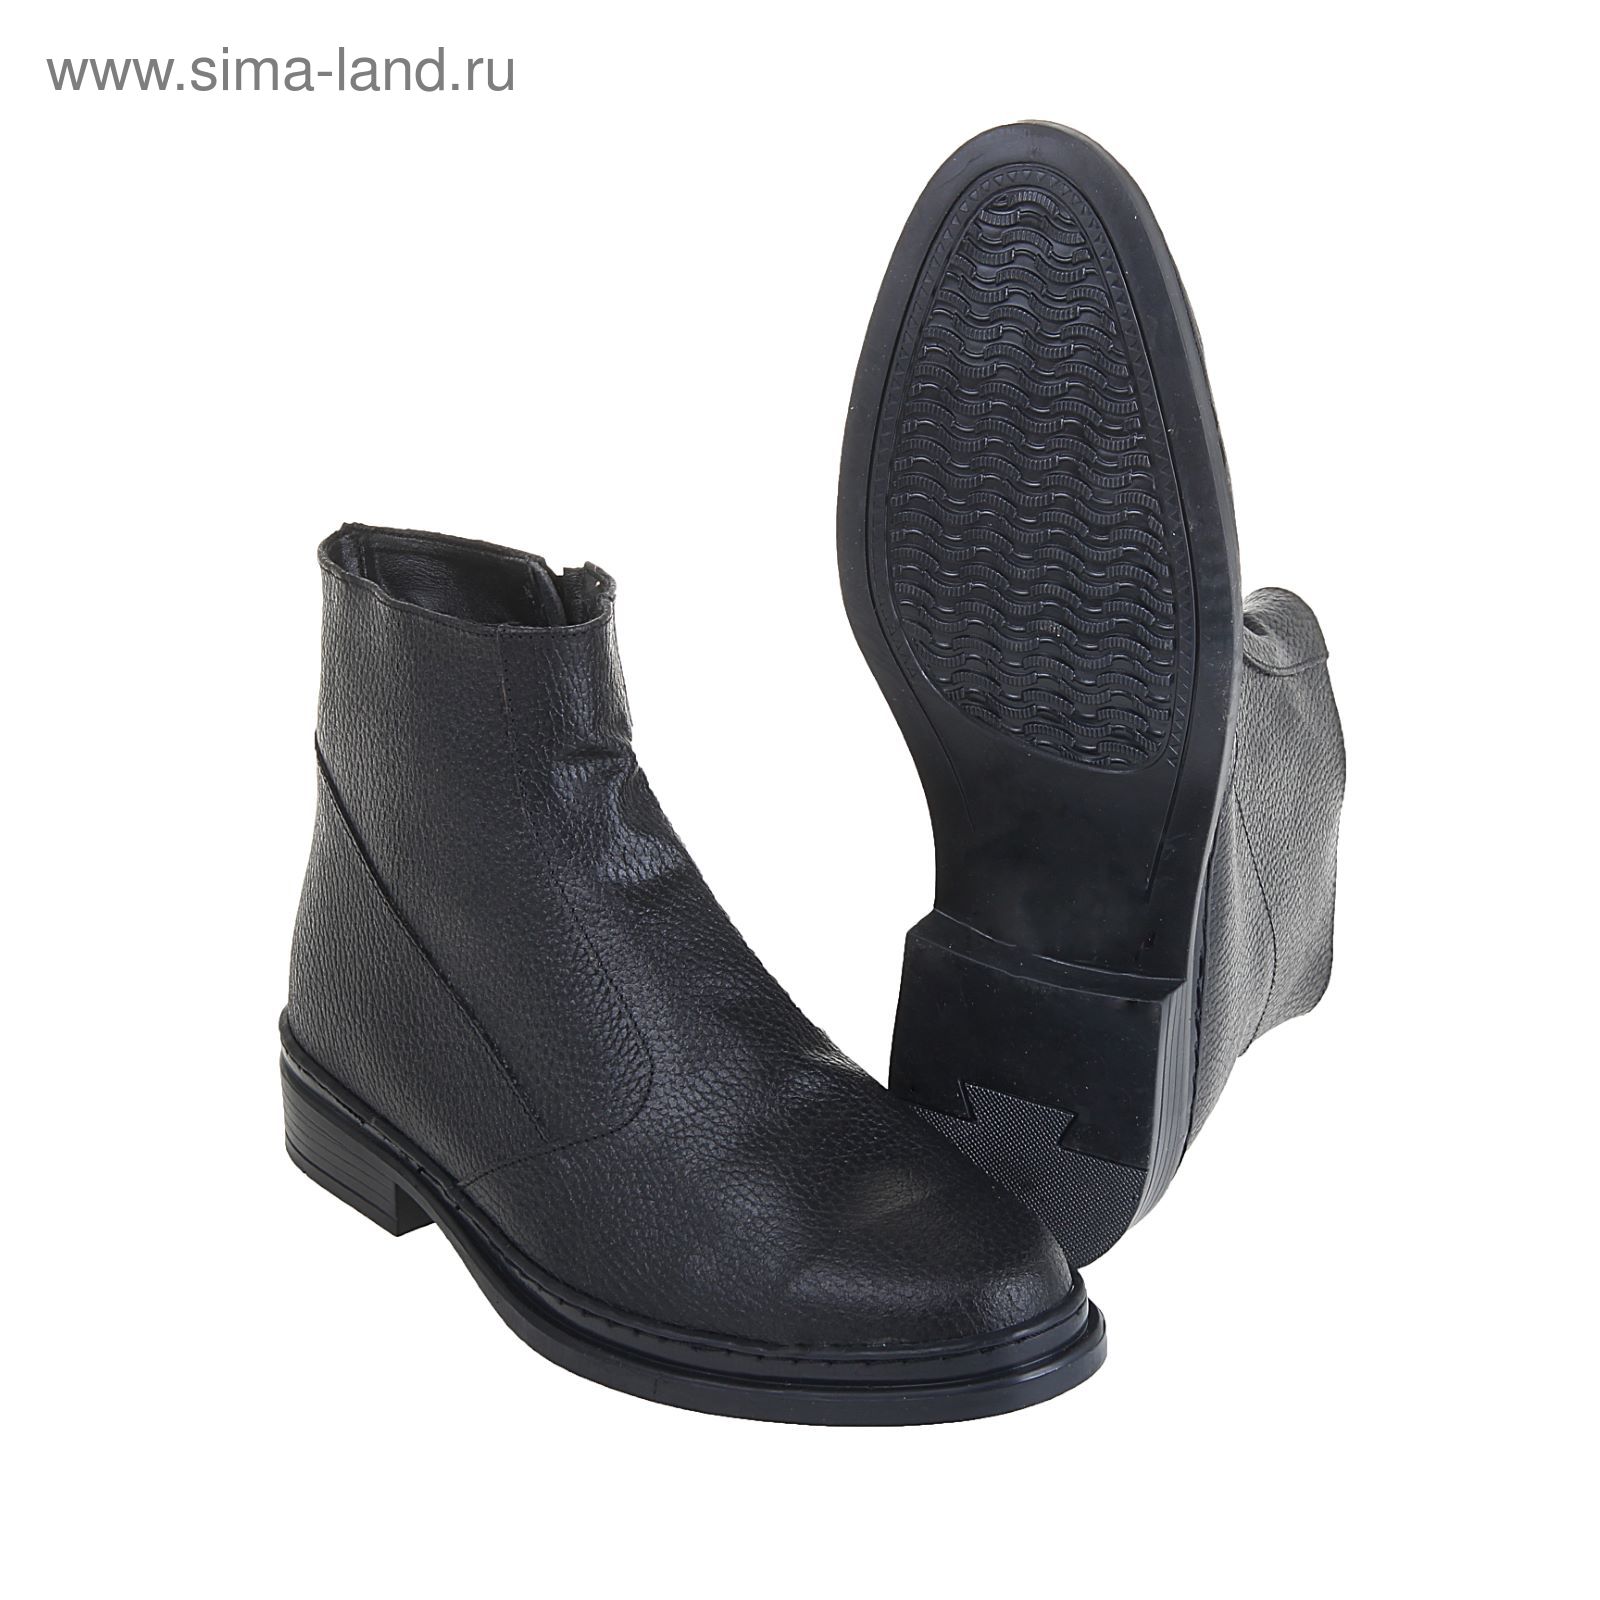 Военные ботинки "БМ-4", искуственный мех, зимние, размер-43